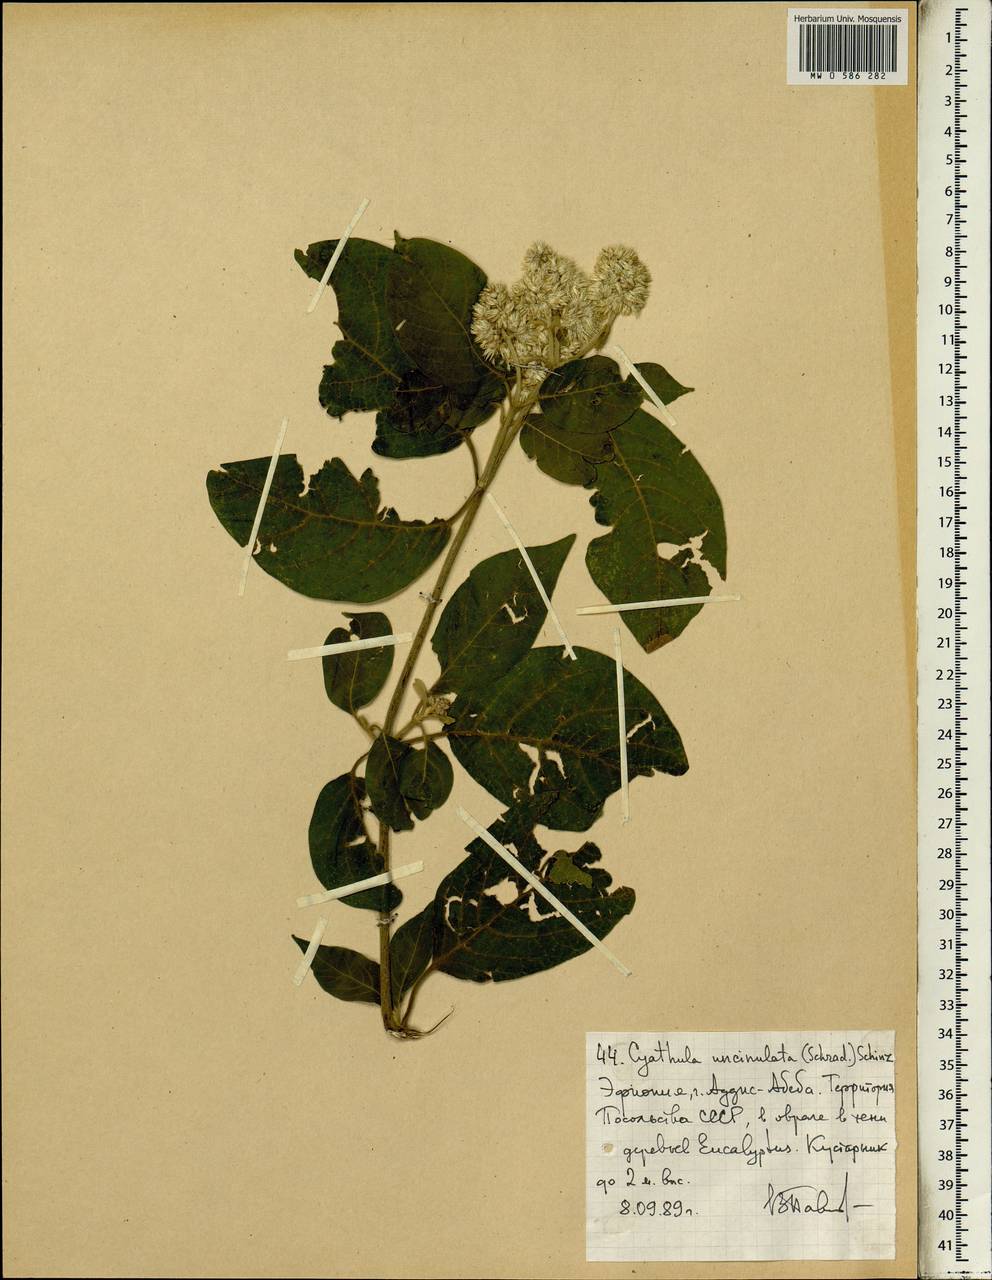 Cyathula uncinulata (Schrad.) Schinz, Африка (AFR) (Эфиопия)